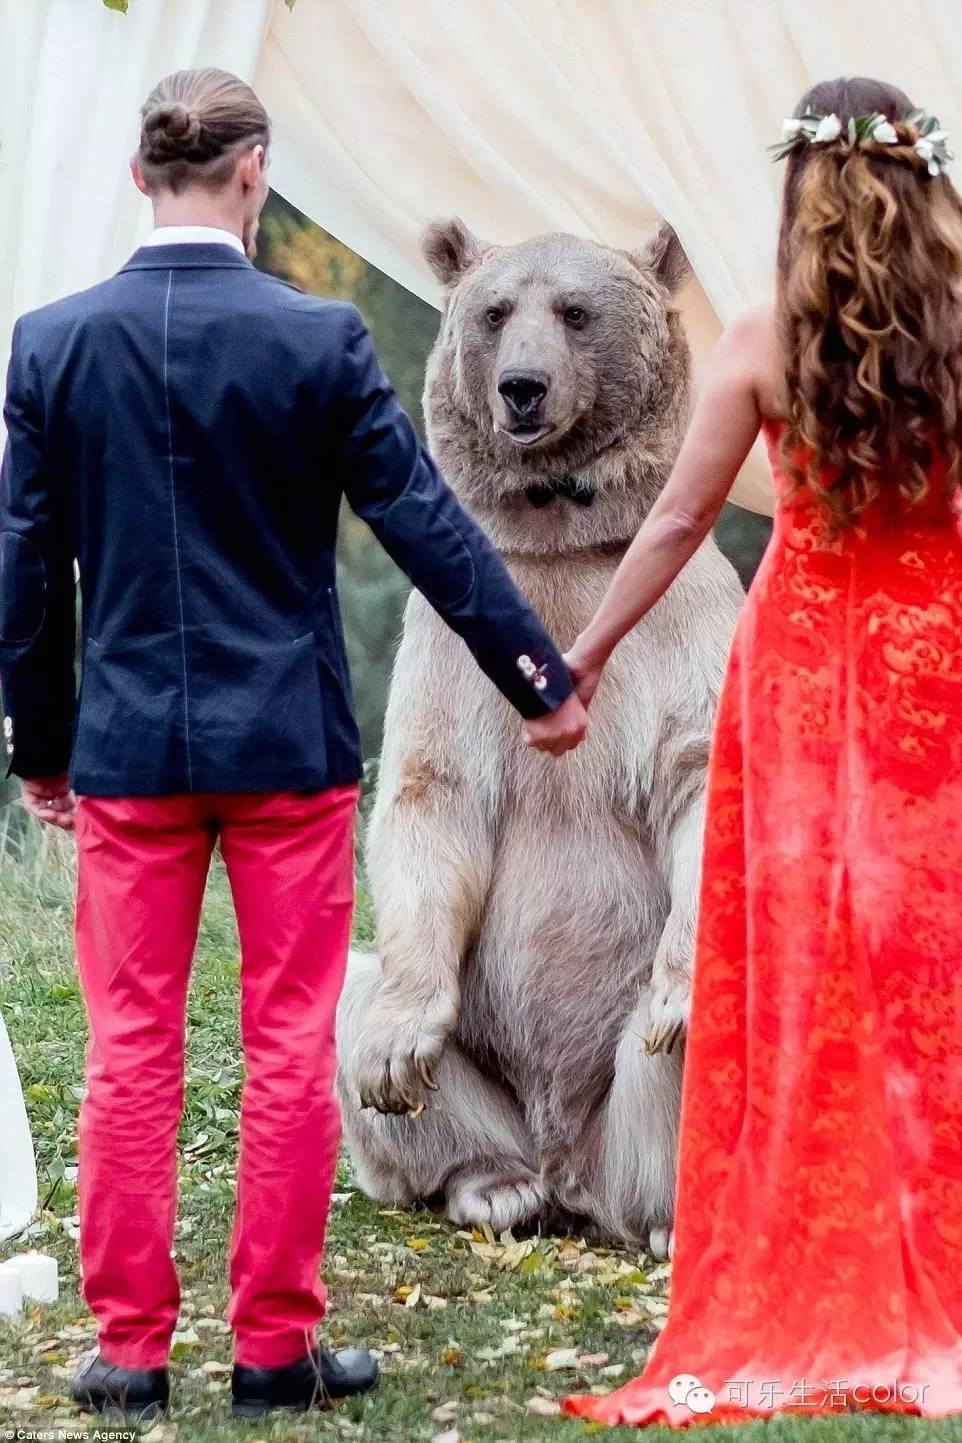 俄罗斯一对新人结婚 佢地邀请到梦想中噶证婚人 一只体型硕大的棕熊